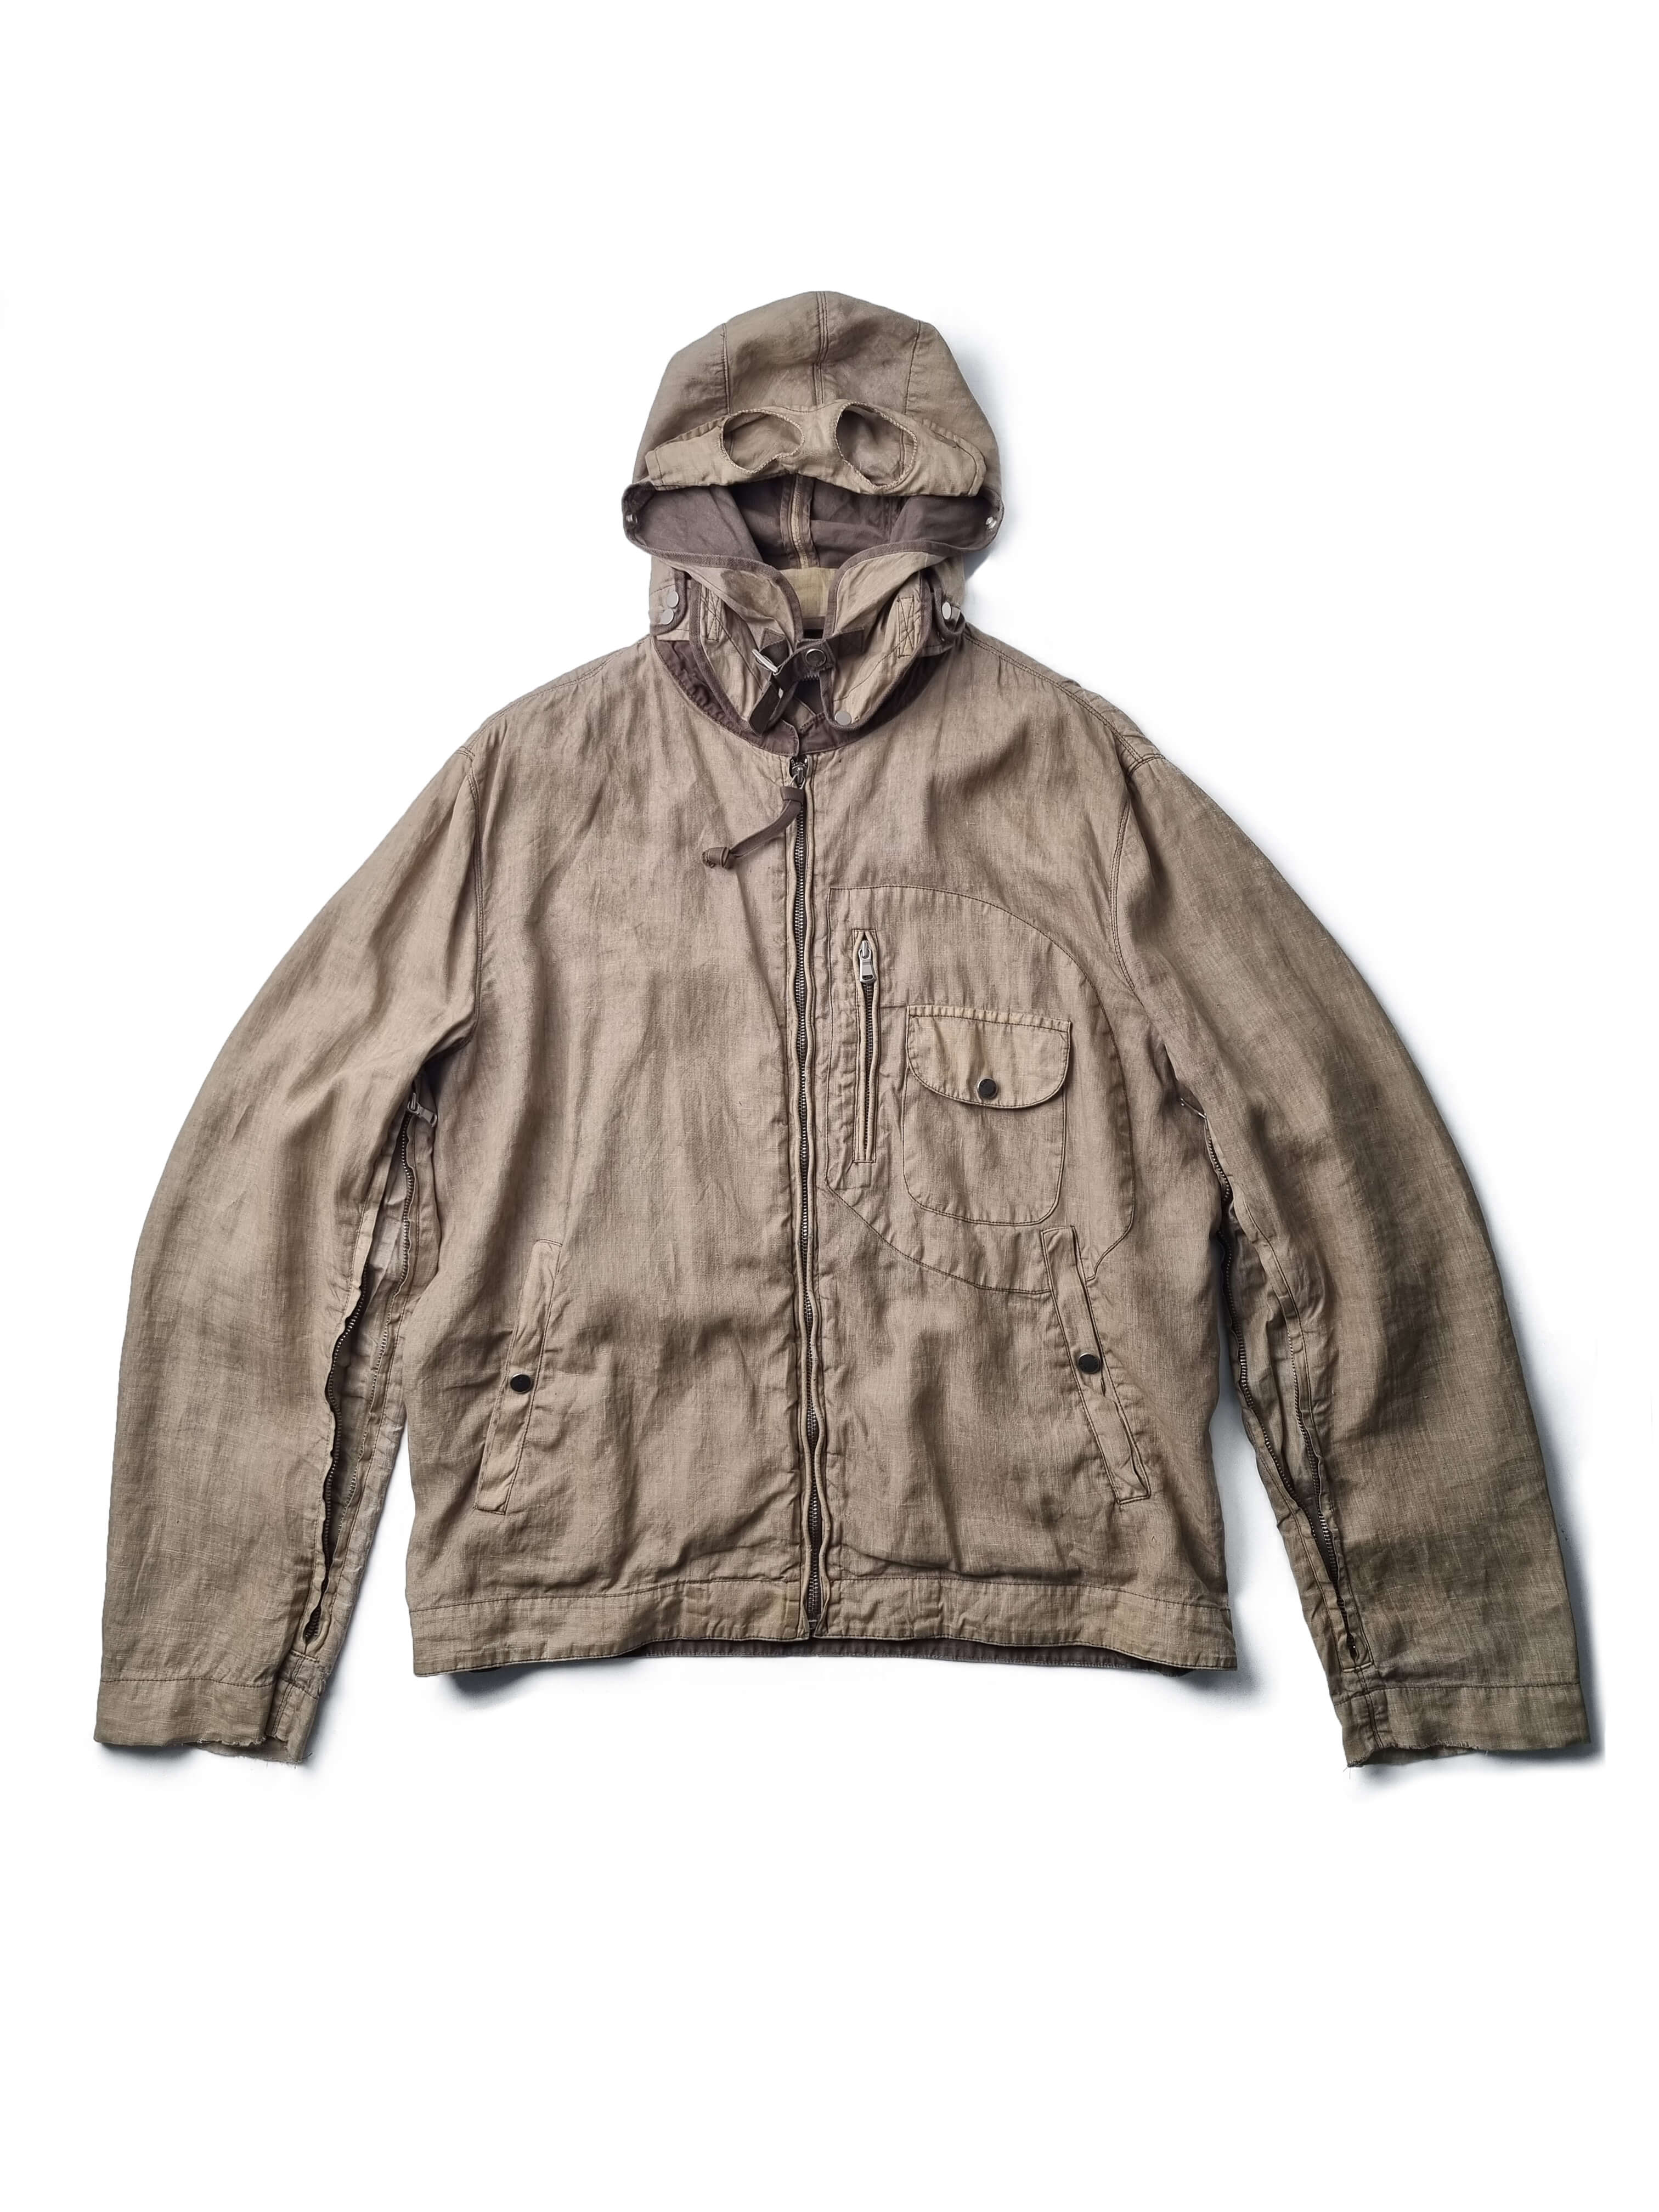 CP COMPANY 2004ss lino jacket